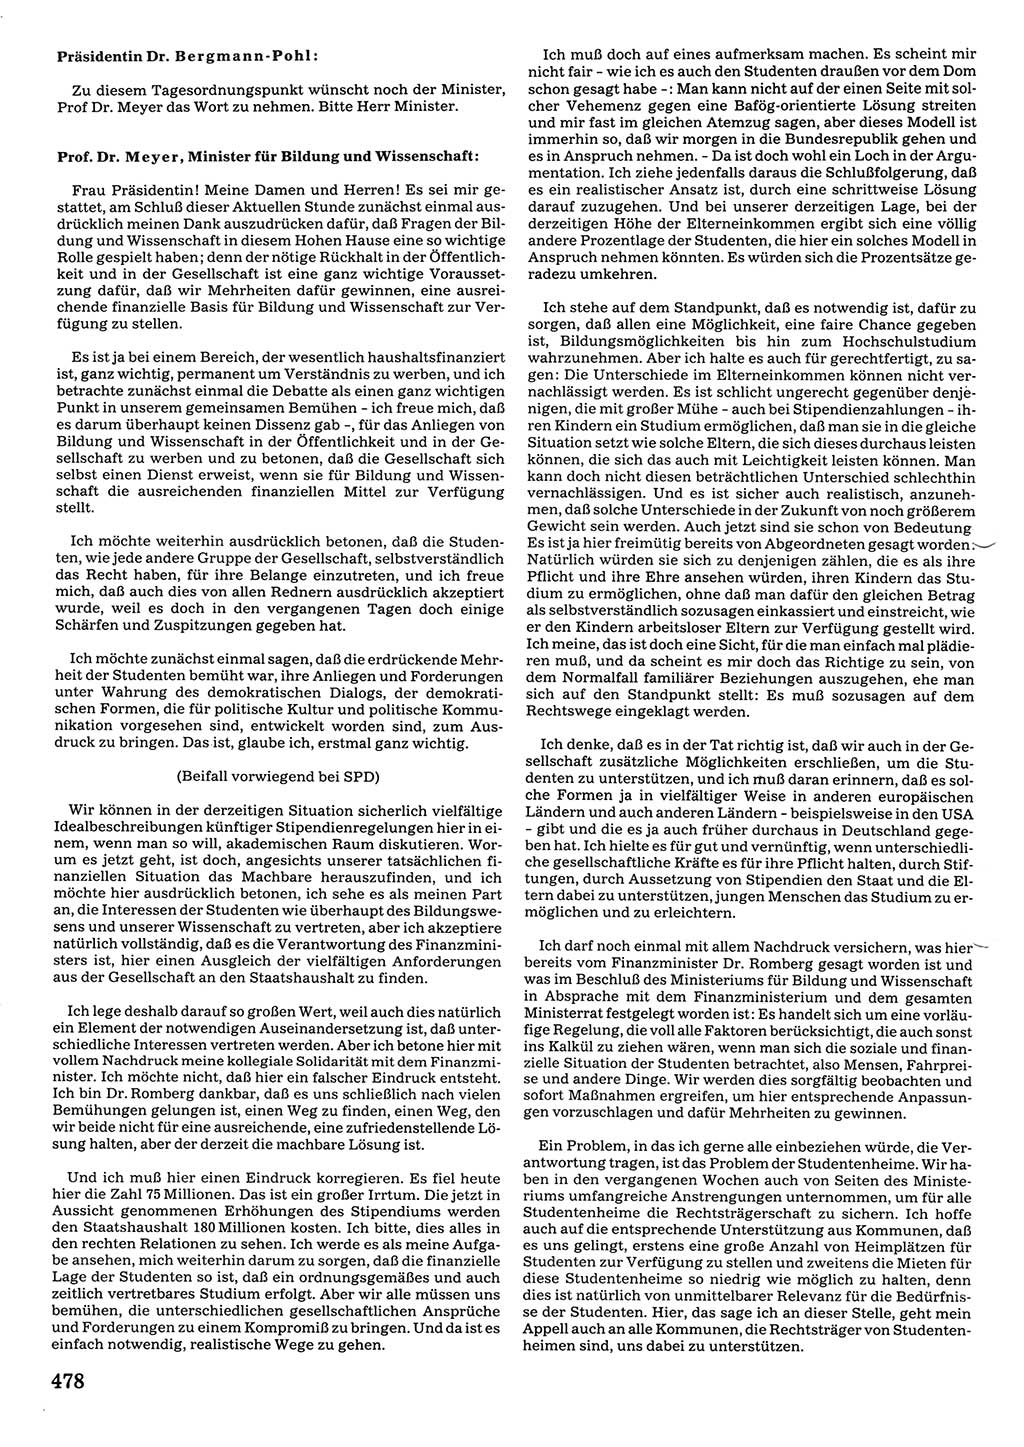 Tagungen der Volkskammer (VK) der Deutschen Demokratischen Republik (DDR), 10. Wahlperiode 1990, Seite 478 (VK. DDR 10. WP. 1990, Prot. Tg. 1-38, 5.4.-2.10.1990, S. 478)